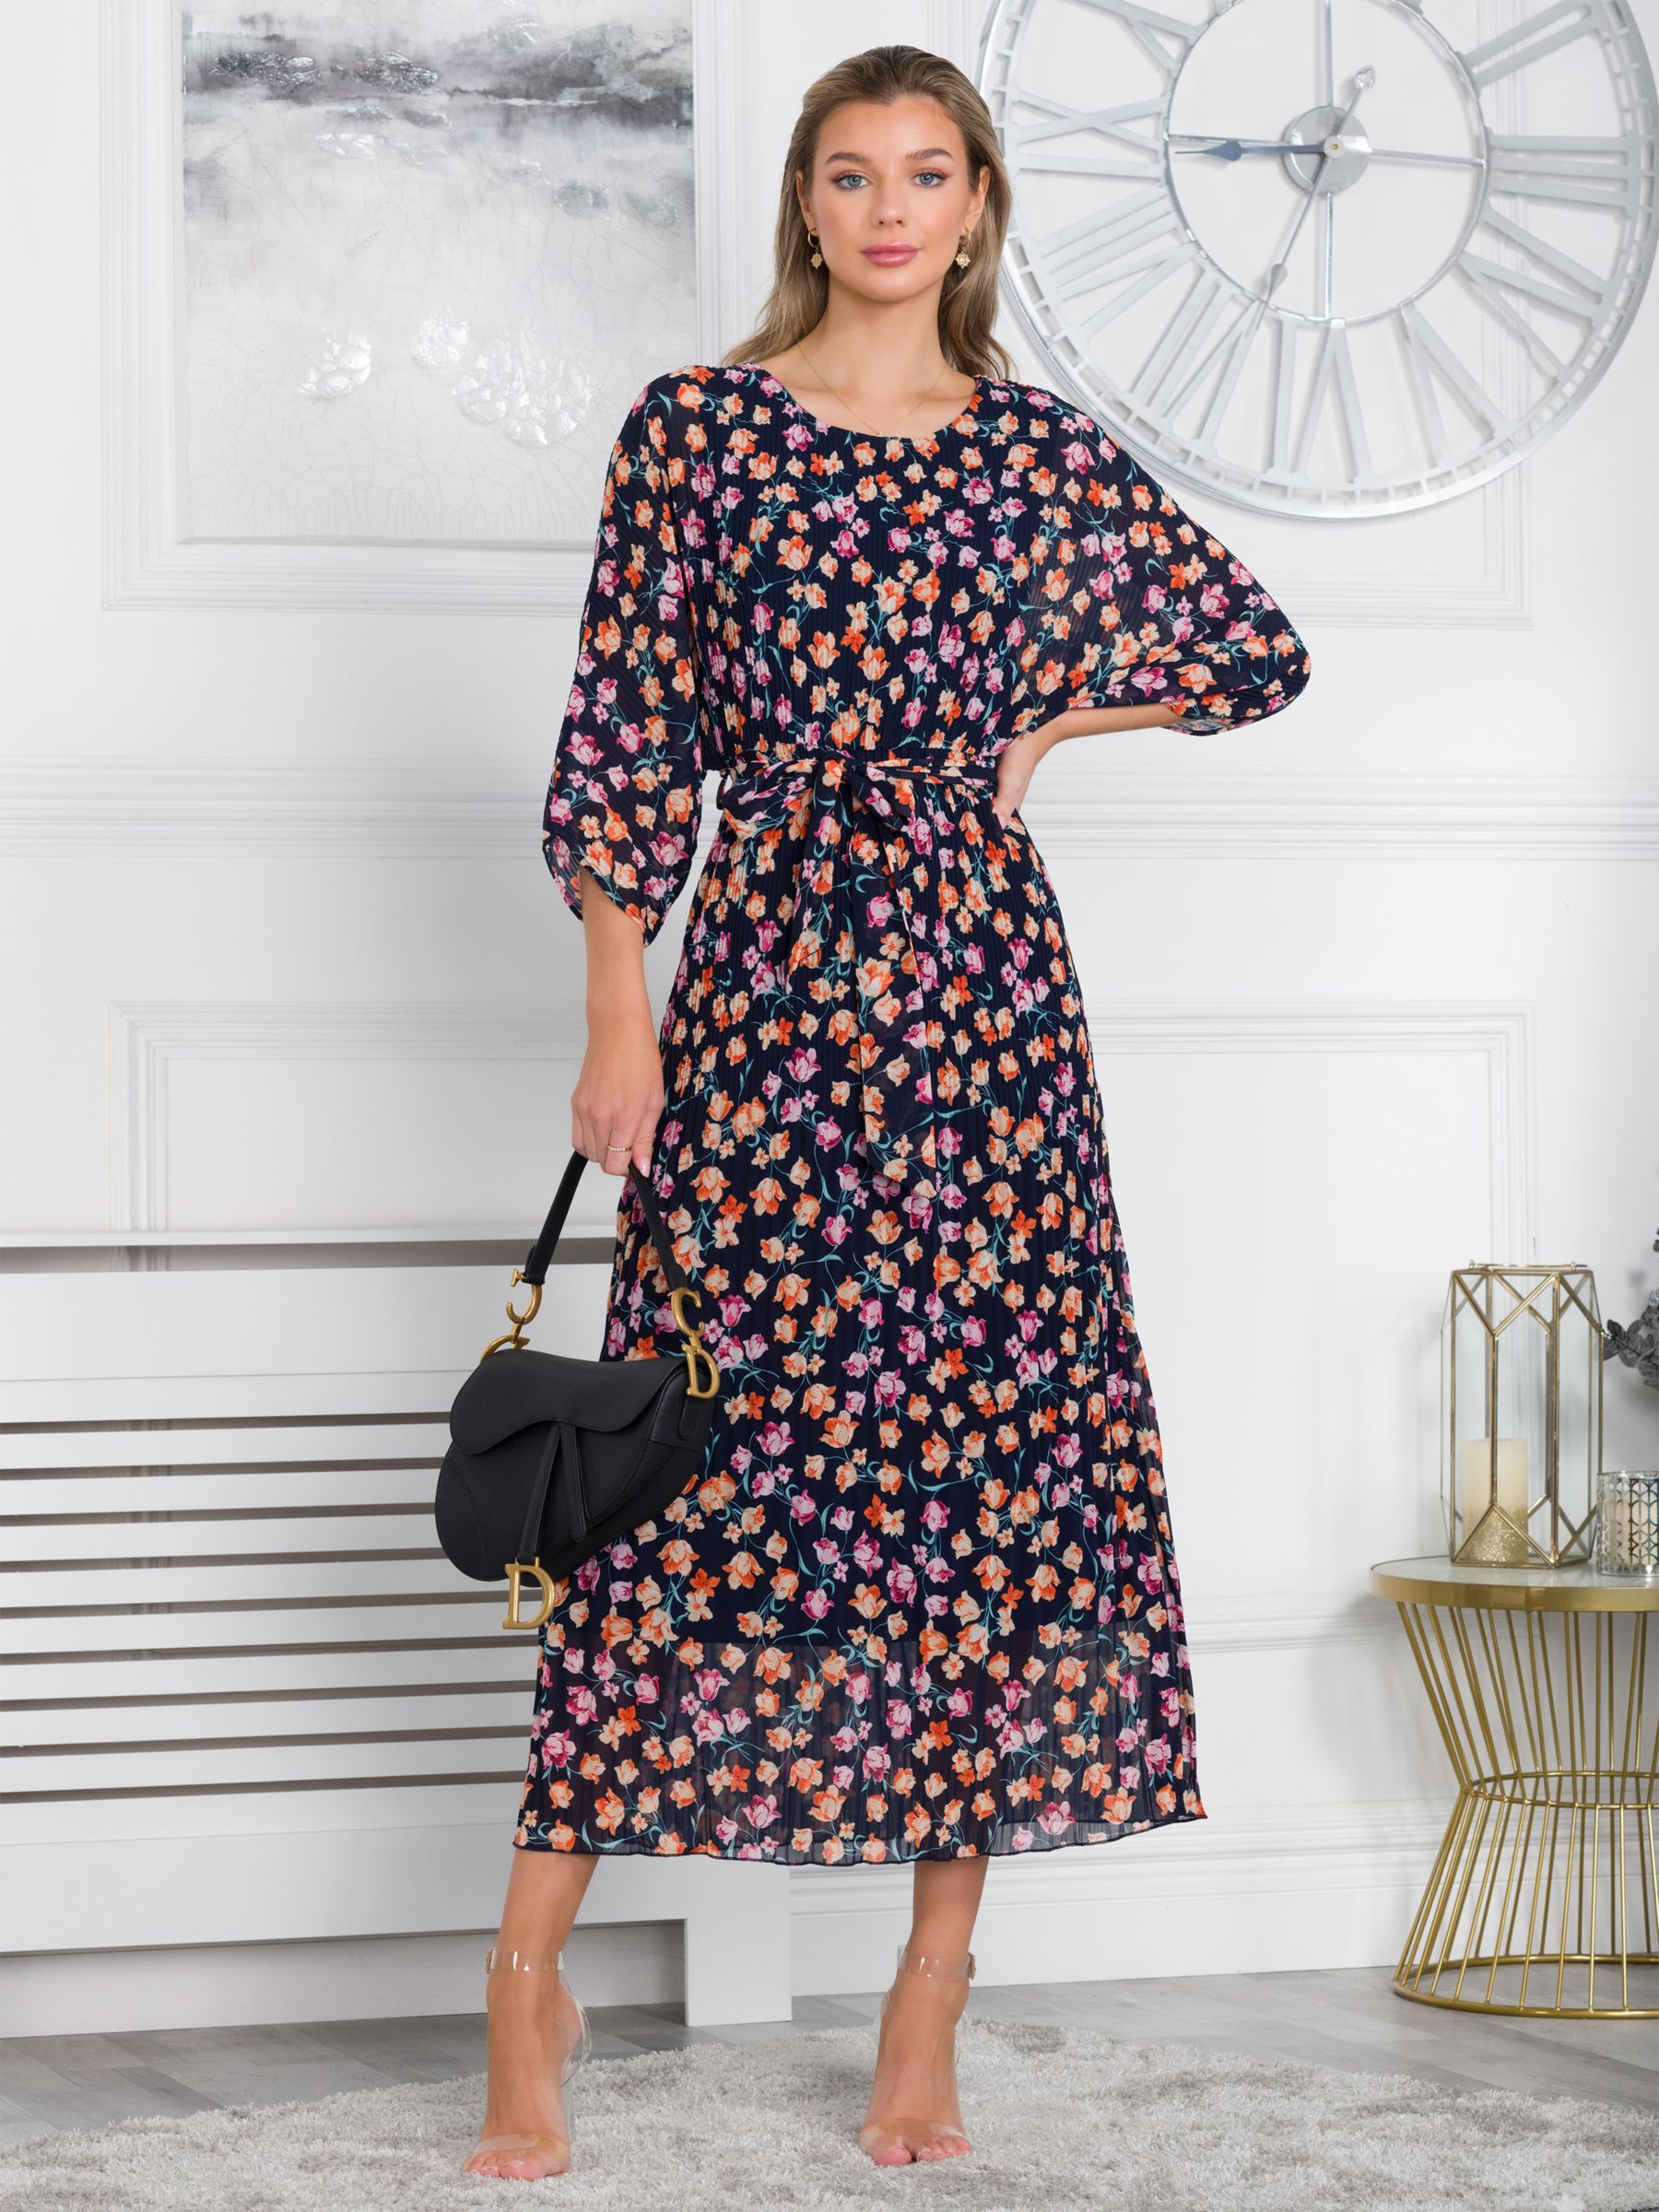 Floral Chiffon Kimono Jacket , Navy Floral – Jolie Moi Retail